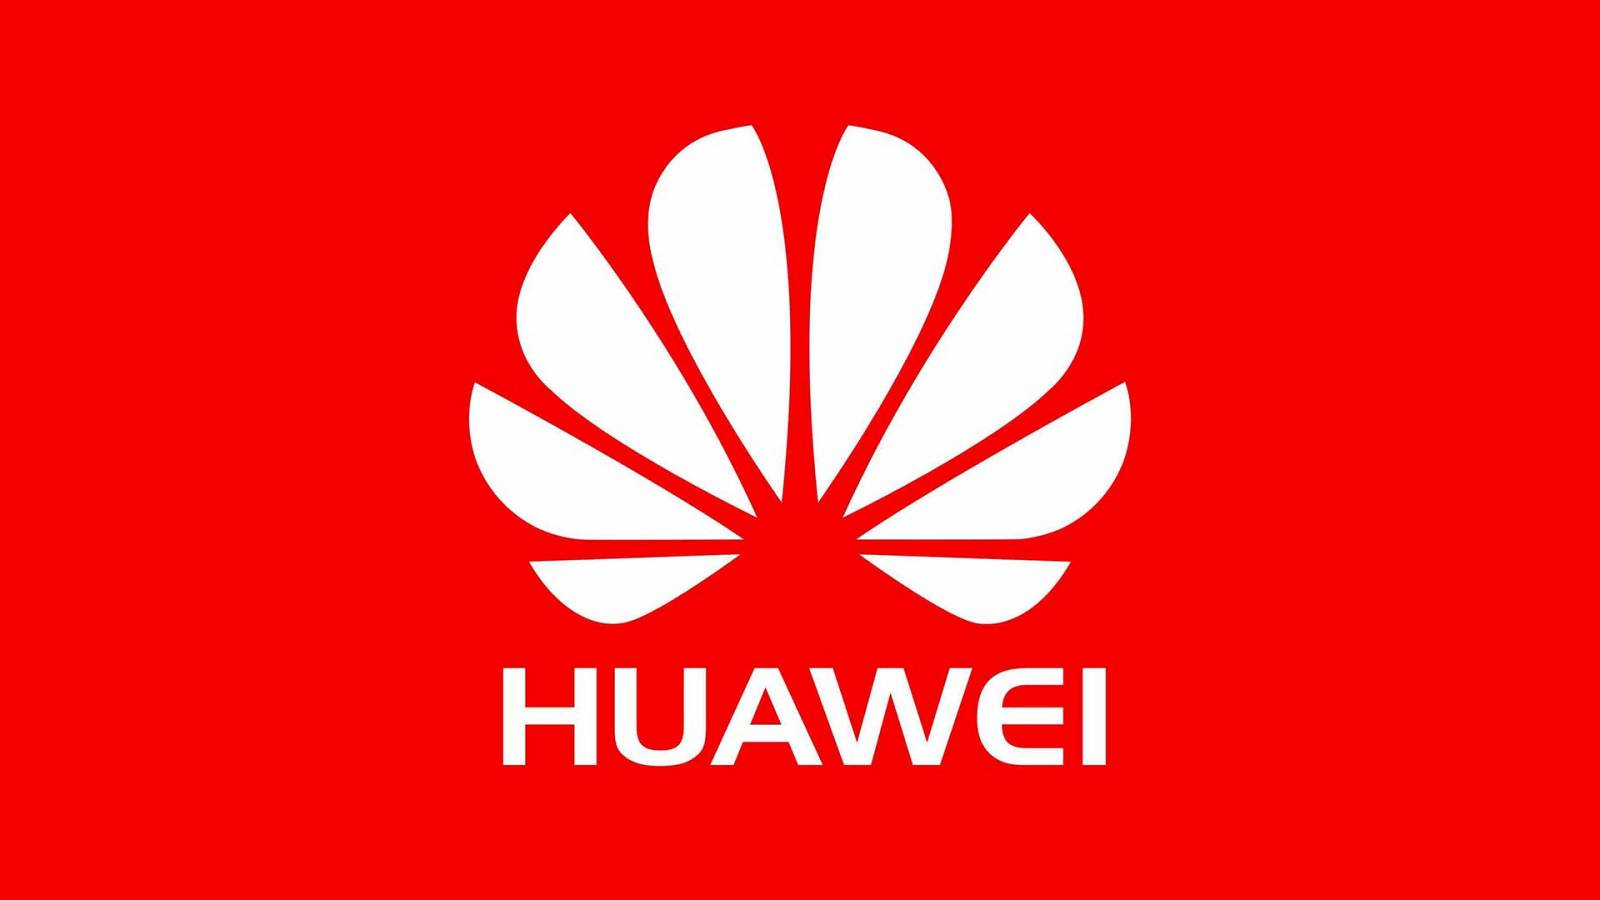 Huawei reactie